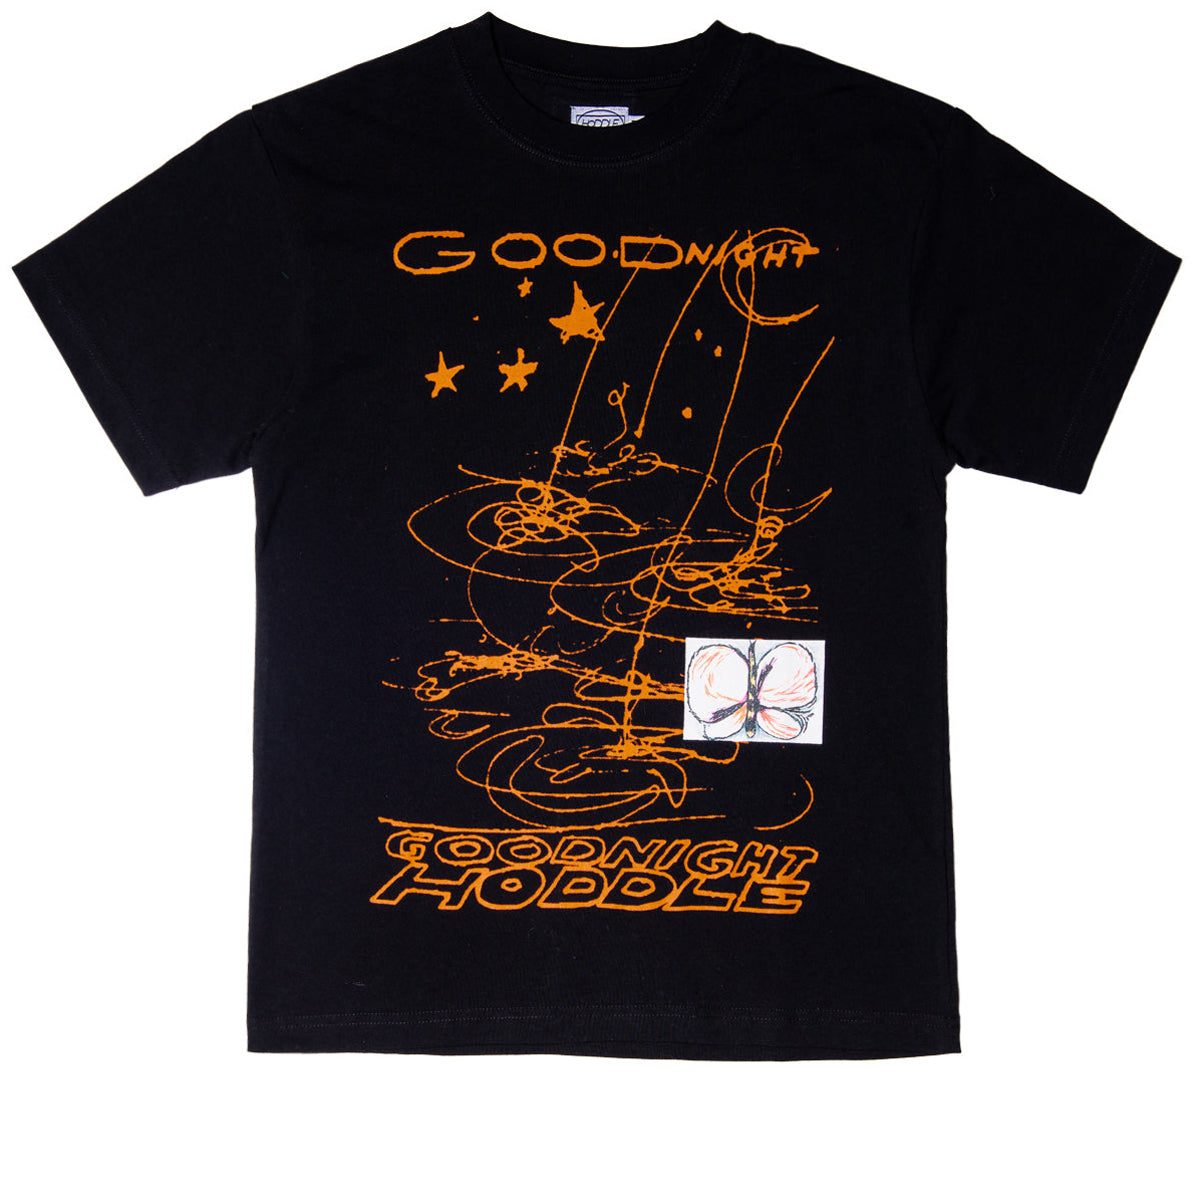 Hoddle Goodnight T-Shirt - Black/Orange image 1